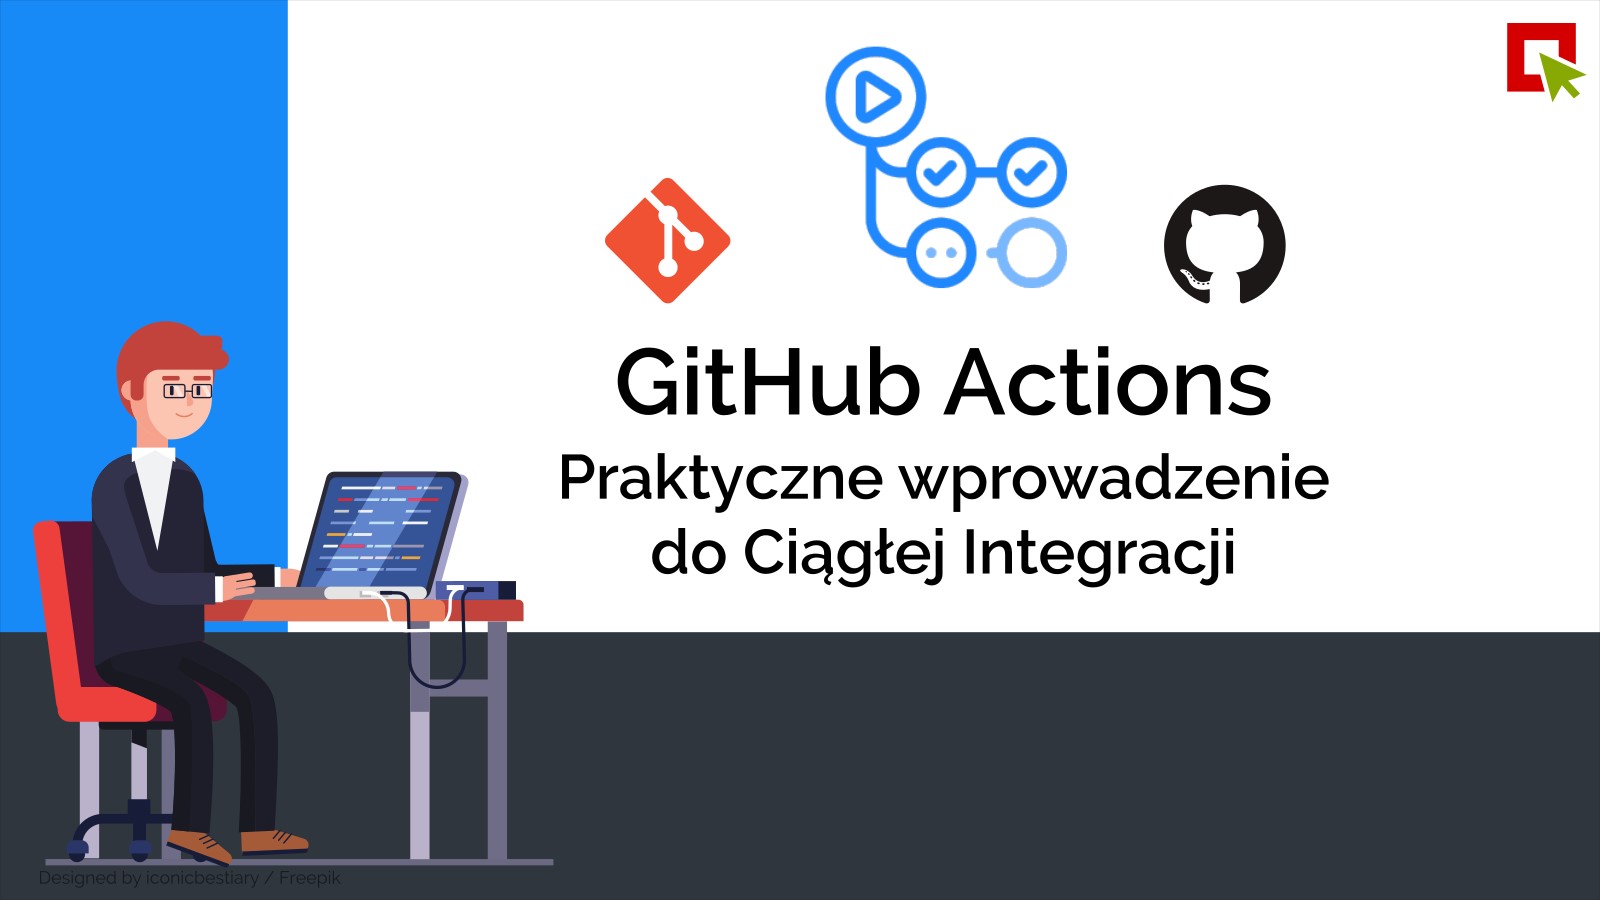 GitHub Actions – Praktyczne wprowadzenie do Ciągłej Integracji